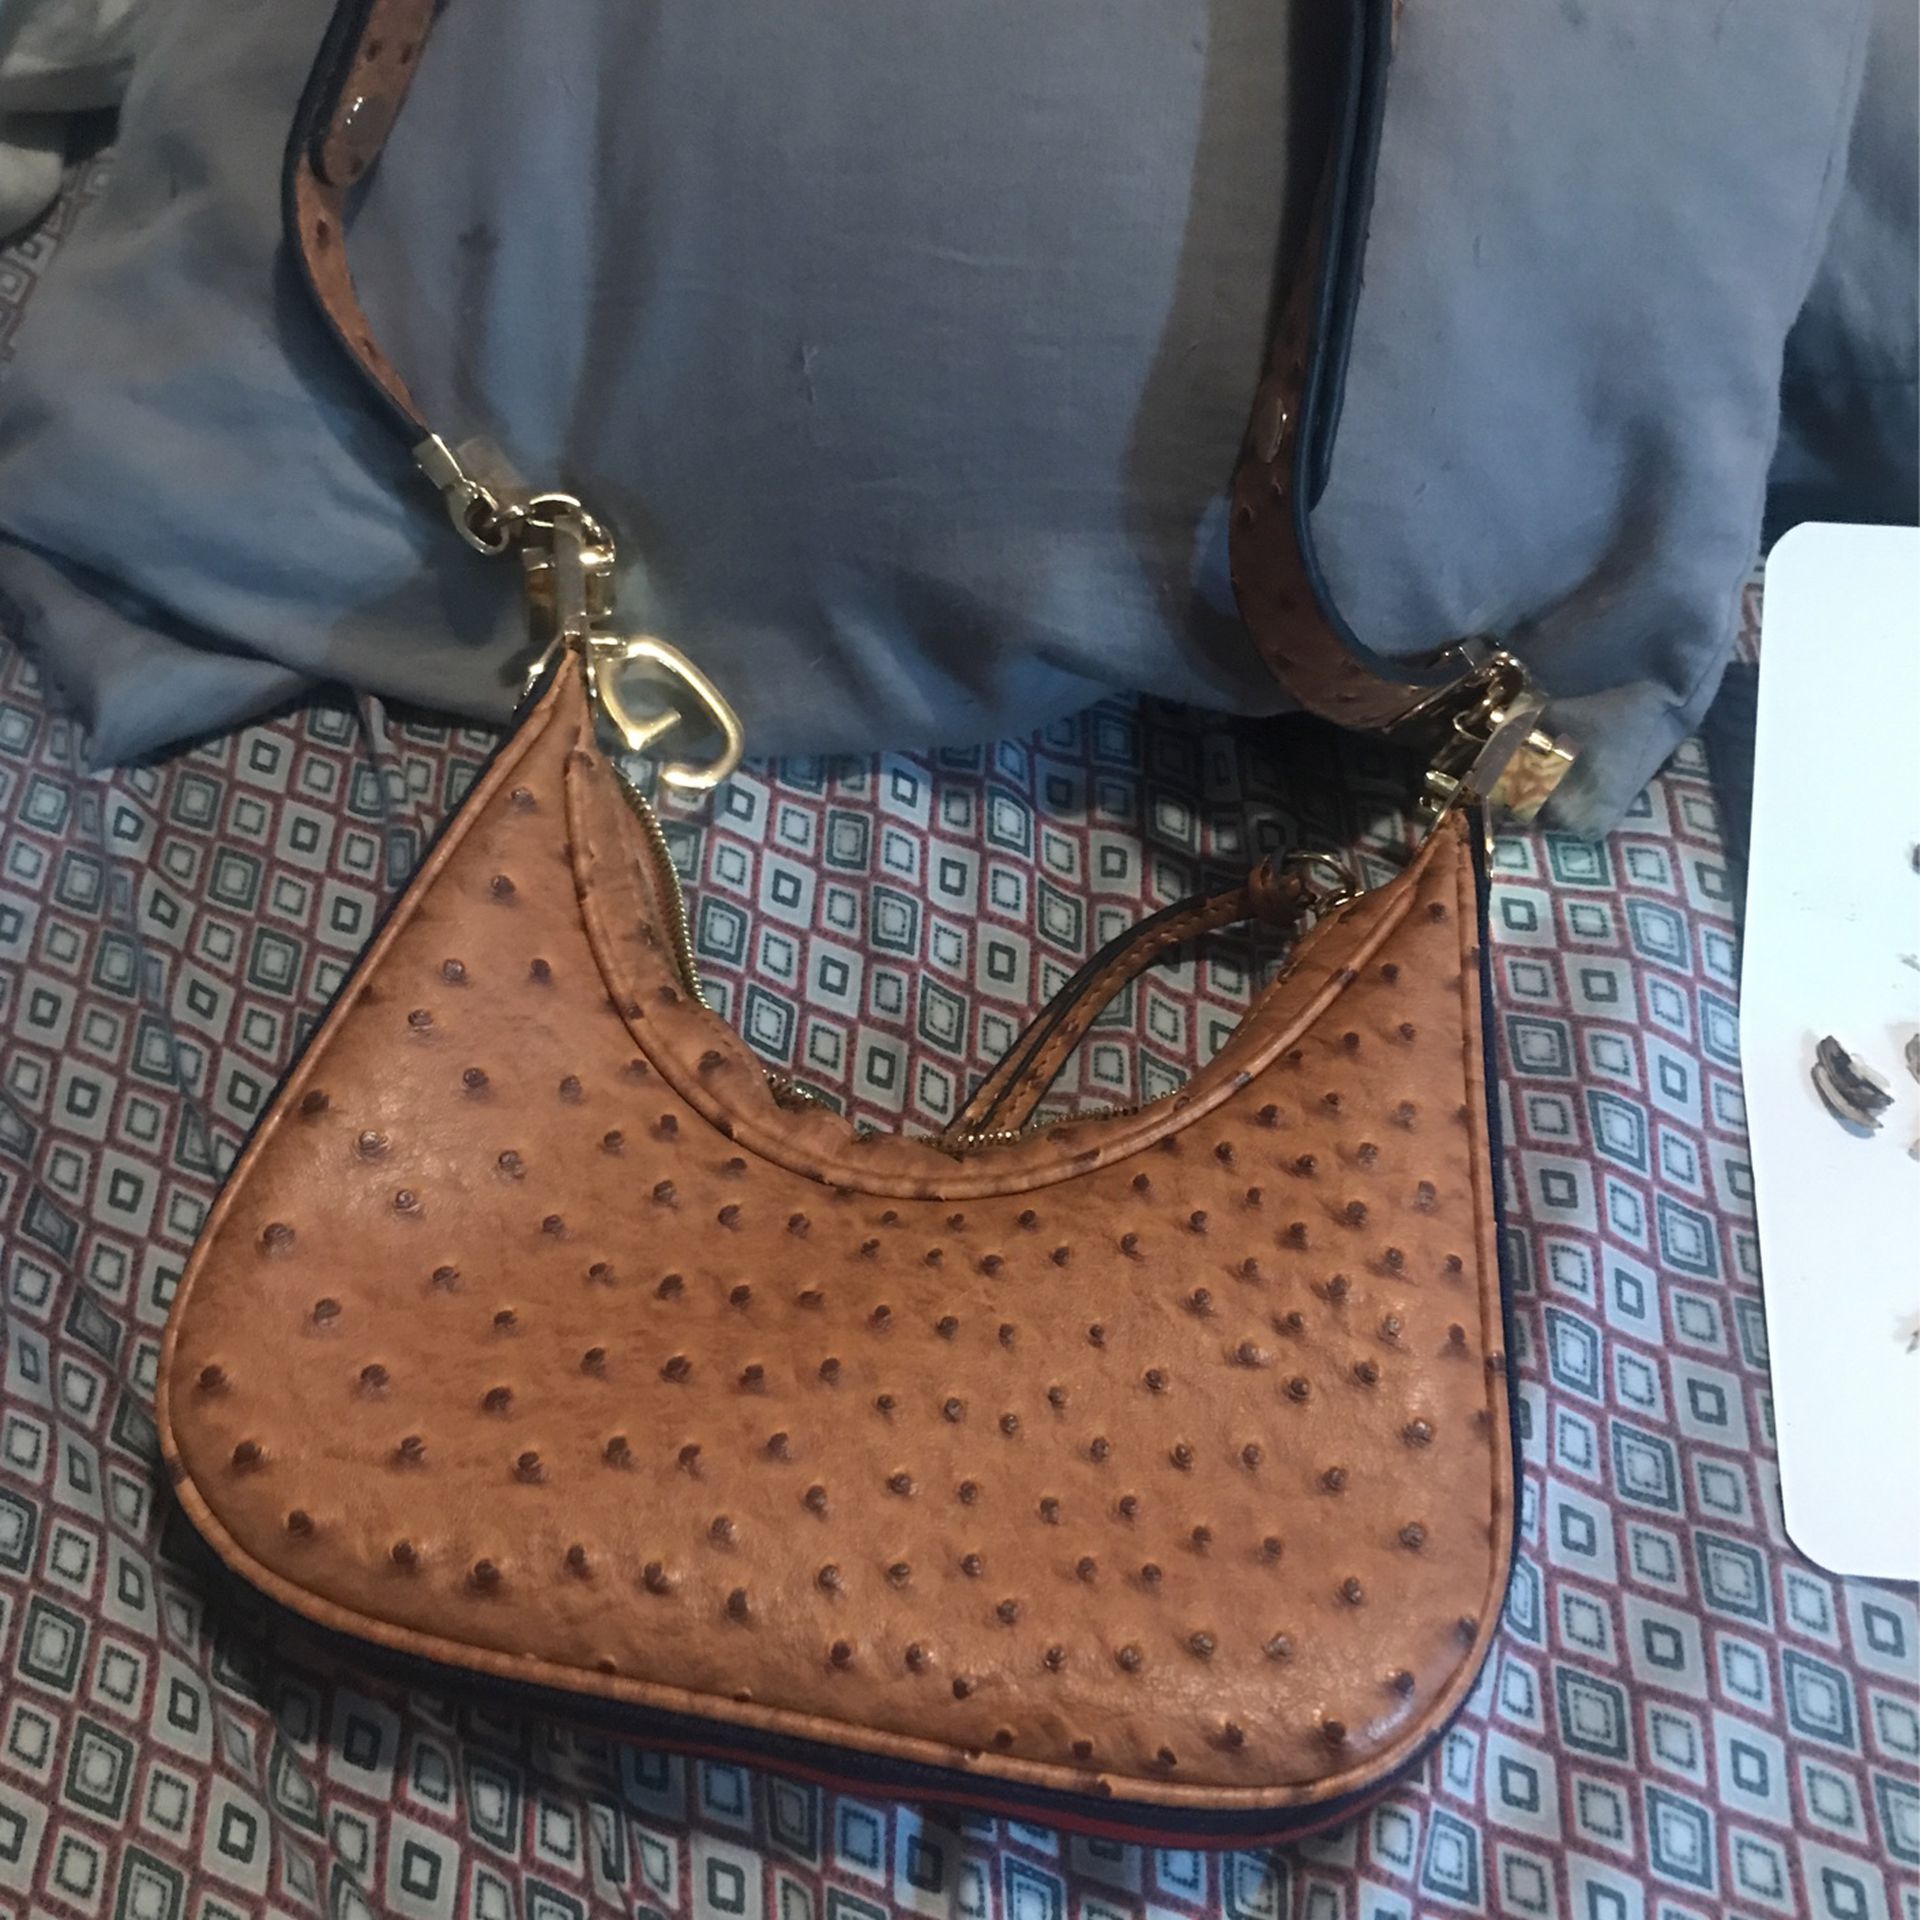 Authentic Gucci Handbag